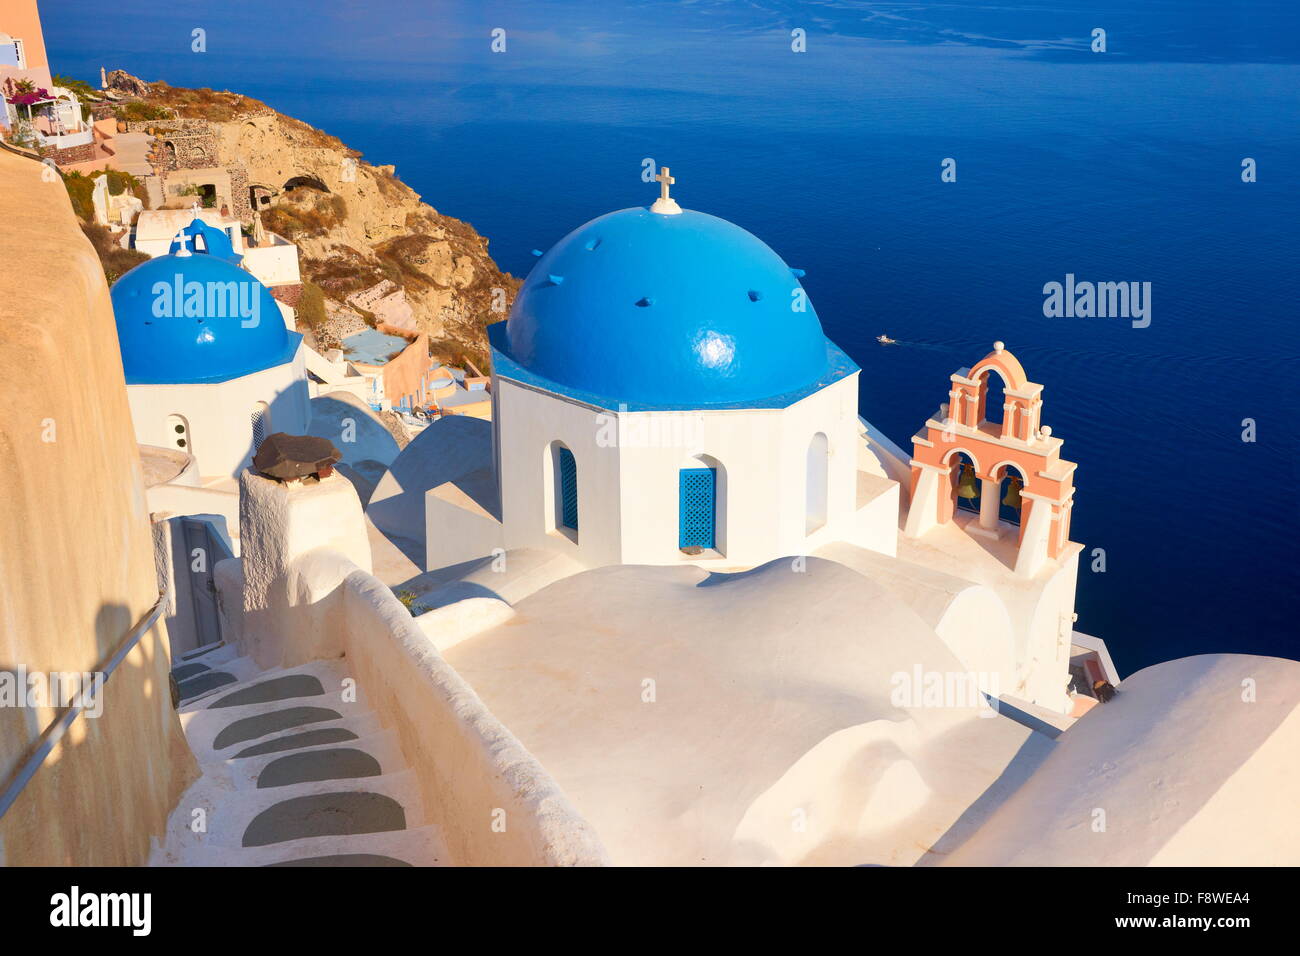 Caldeira de Santorin populaires Paysage avec église blanche grec surplombant la mer, Oia, Santorin, Grèce Banque D'Images